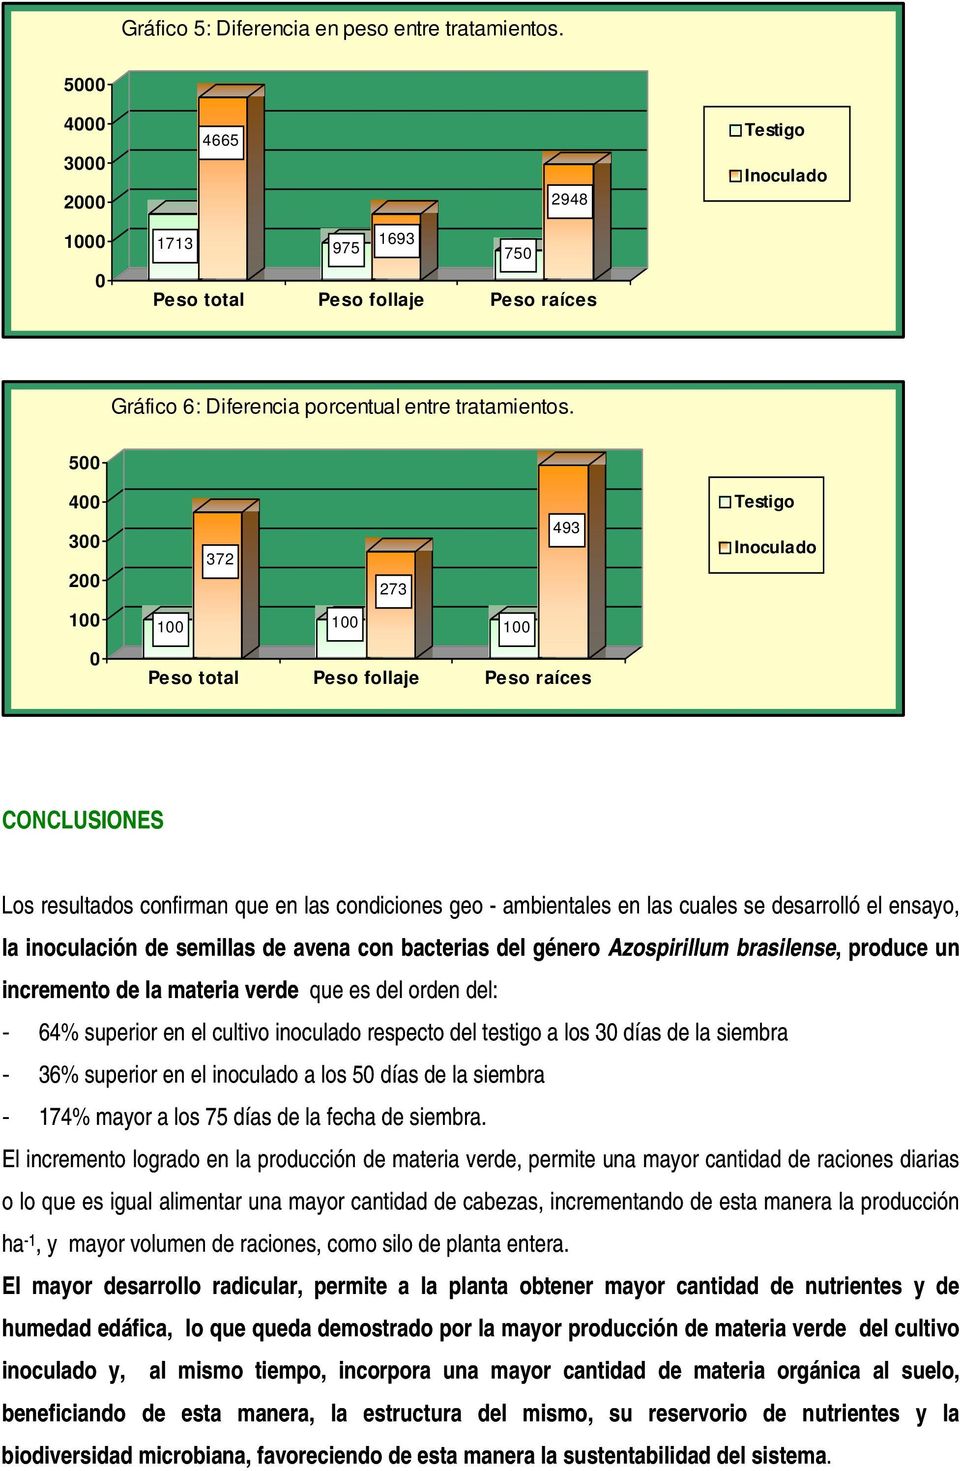 Azospirillum brasilense, produce un incremento de la materia verde que es del orden del: - 64% superior en el cultivo inoculado respecto del tes tigo a los 3 días de la siembra - 36% superior en el